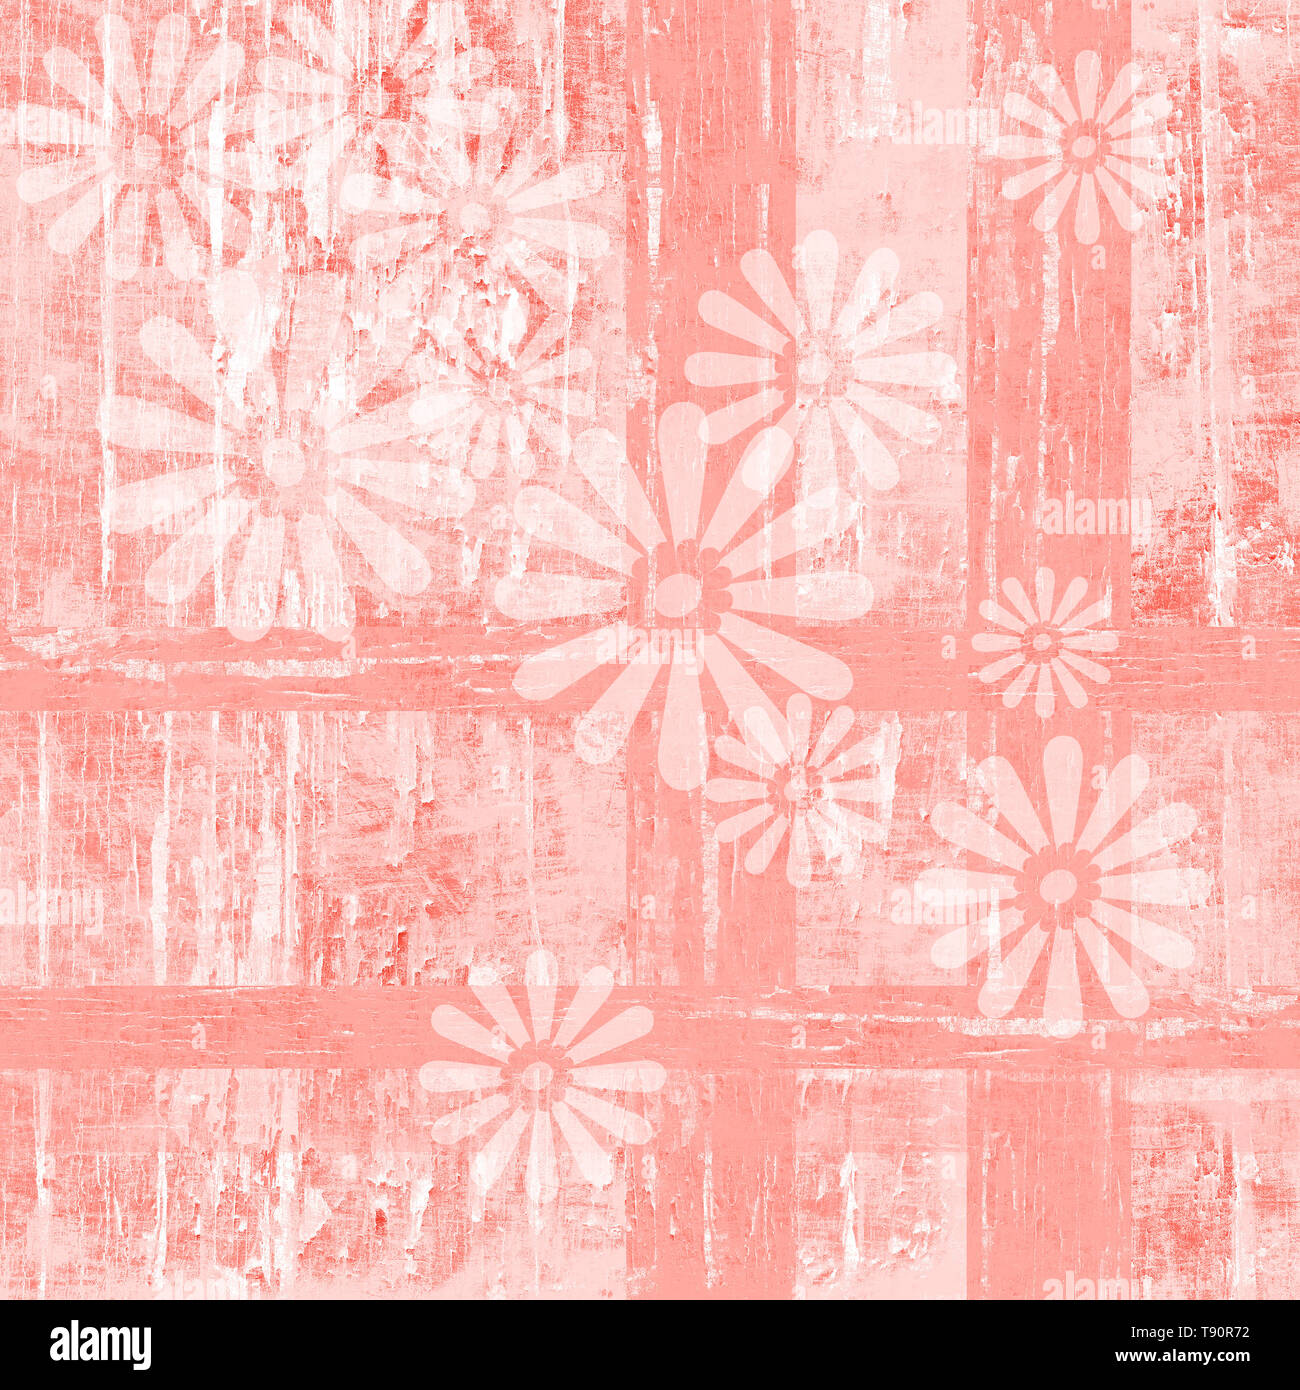 Abgenutzte Holz Textur in PANTONE-Farbe des Jahres, lebende Korallen und weiße Farbe blätterte ab, die in einer geometrischen karierte Muster mit verblichenen White Daisy Flowers. Stockfoto